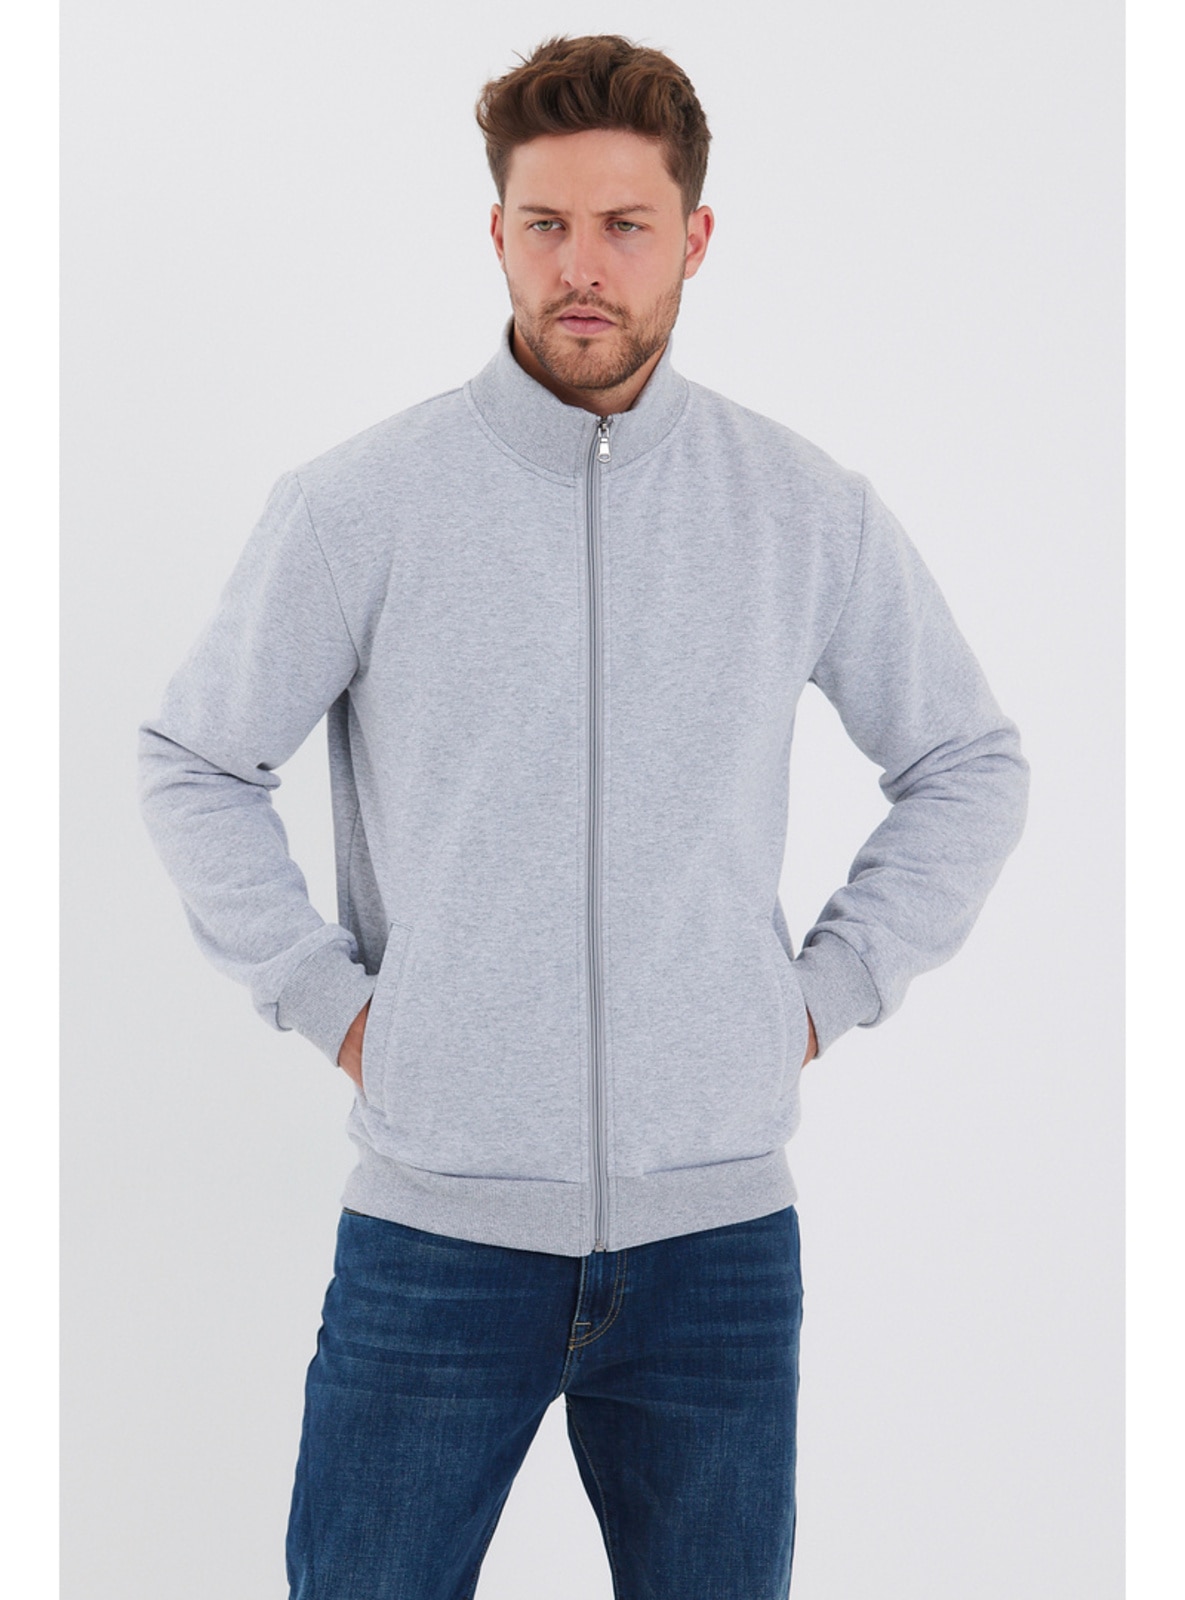 Gray - 300gr - - Men`s Sweatshirts